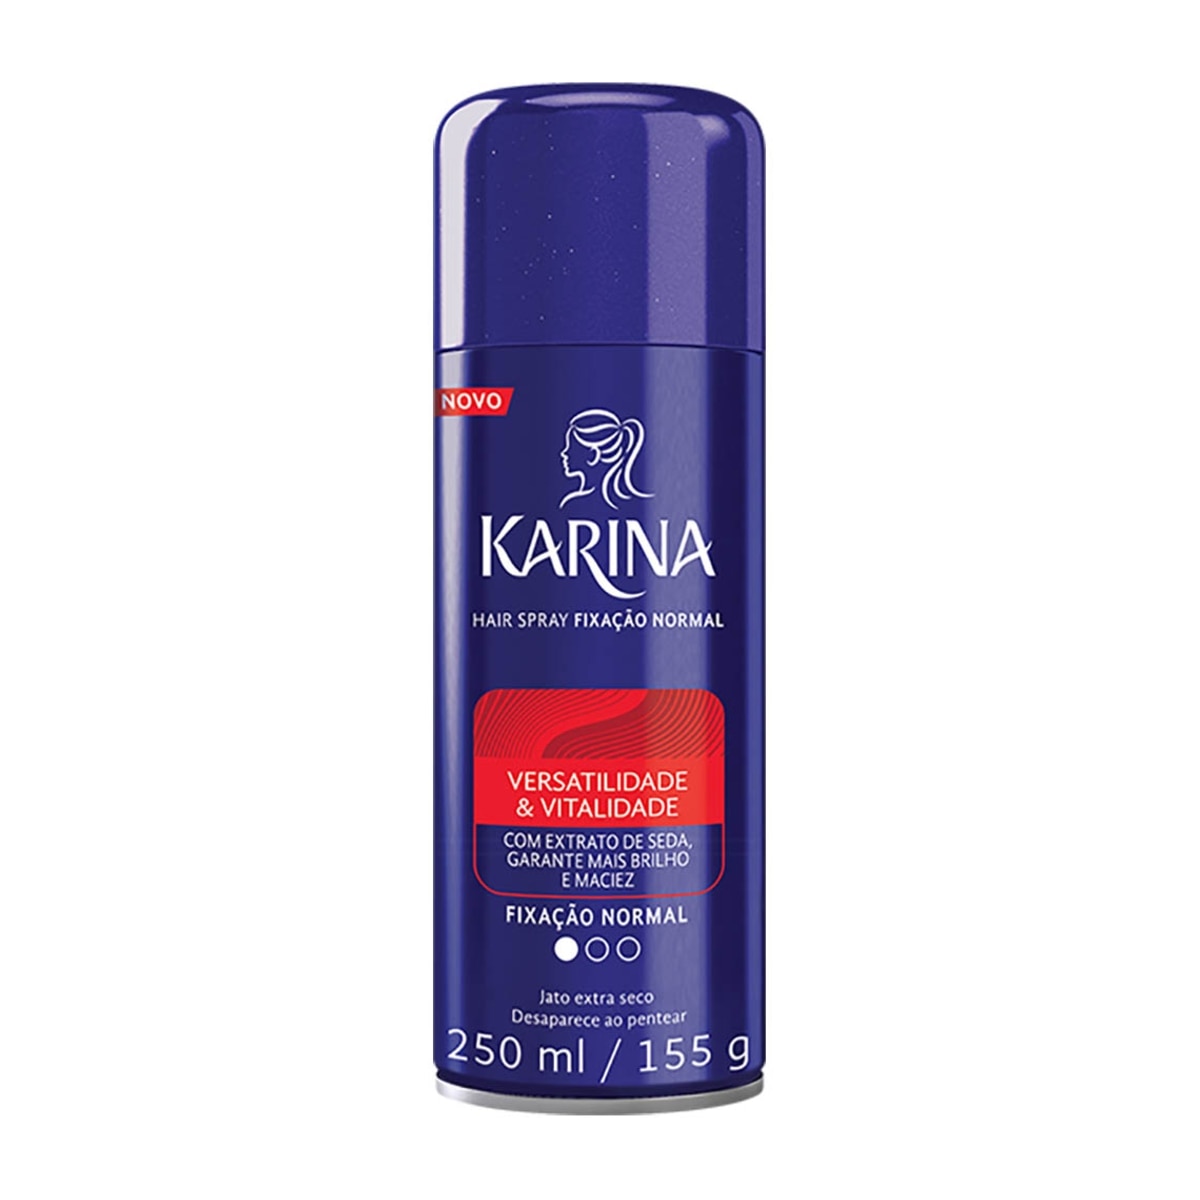 Spray Fixador Karina Versatilidade & Vitalidade Fixacao Normal 250ml